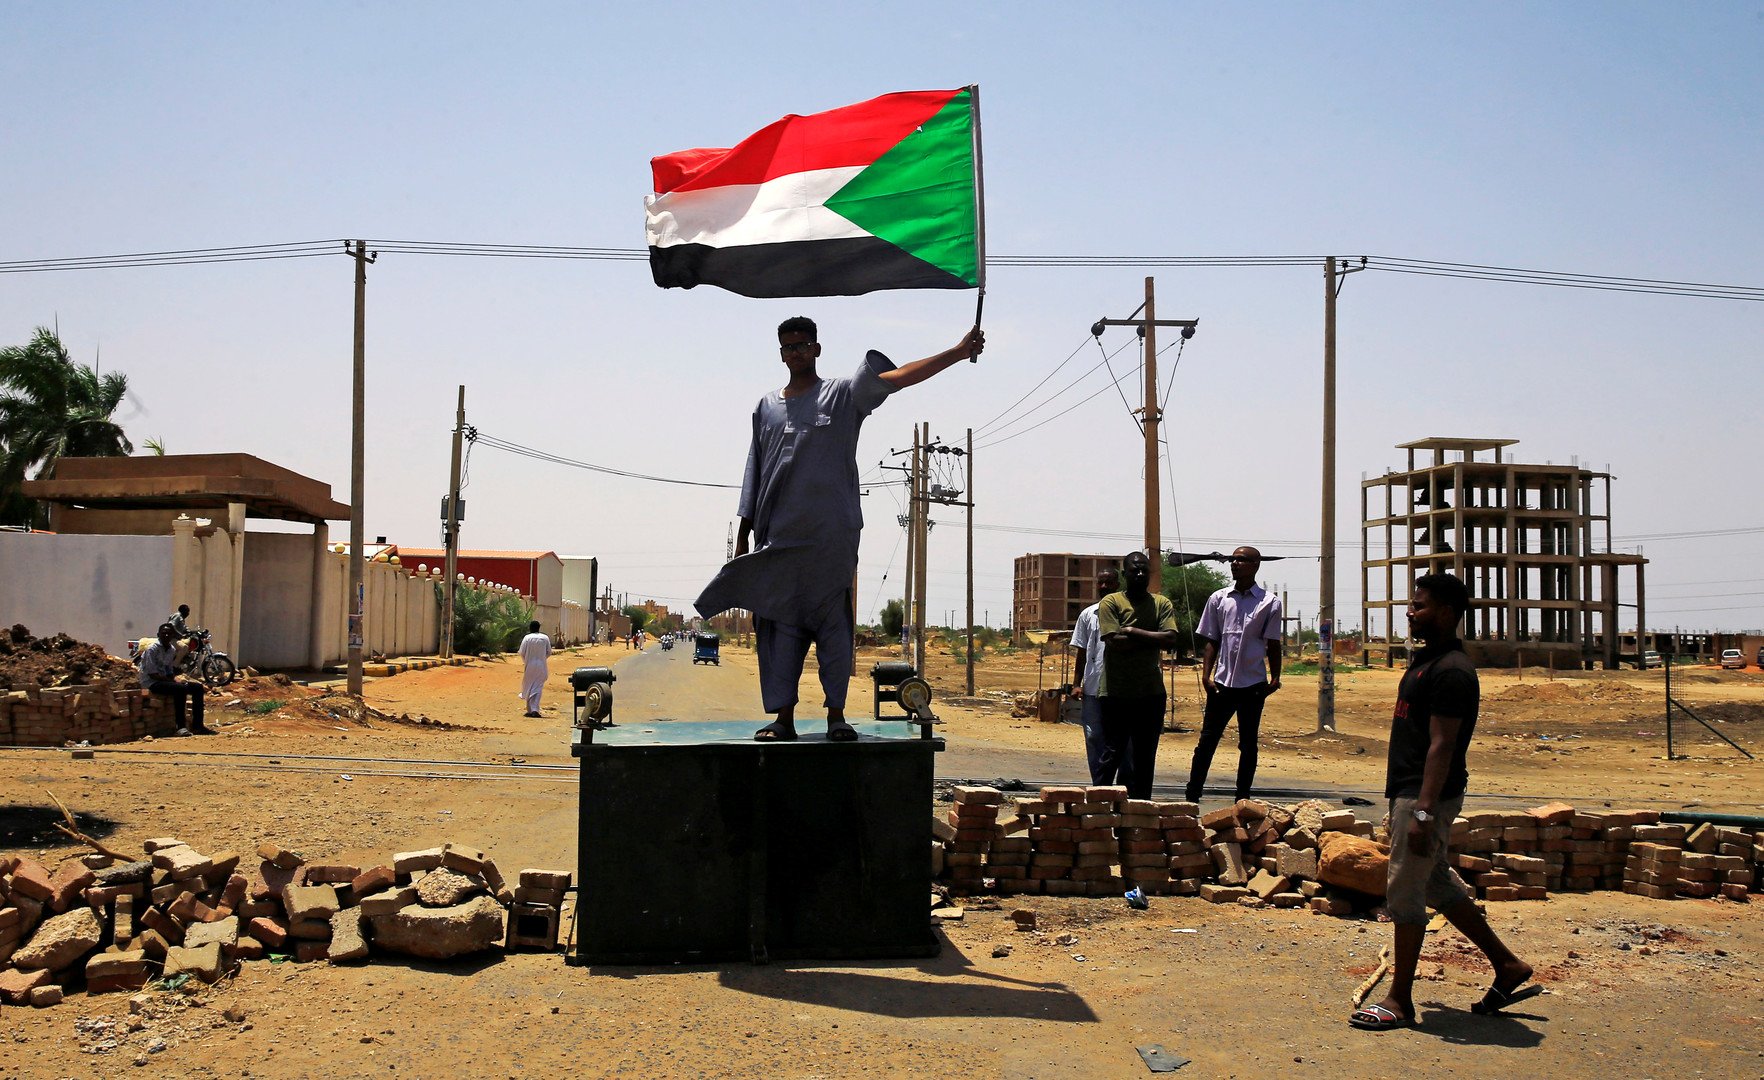 لجنة أطباء السودان: ارتفاع عدد ضحايا فض الاعتصام أمام مقر قيادة الجيش إلى 101 قتيل